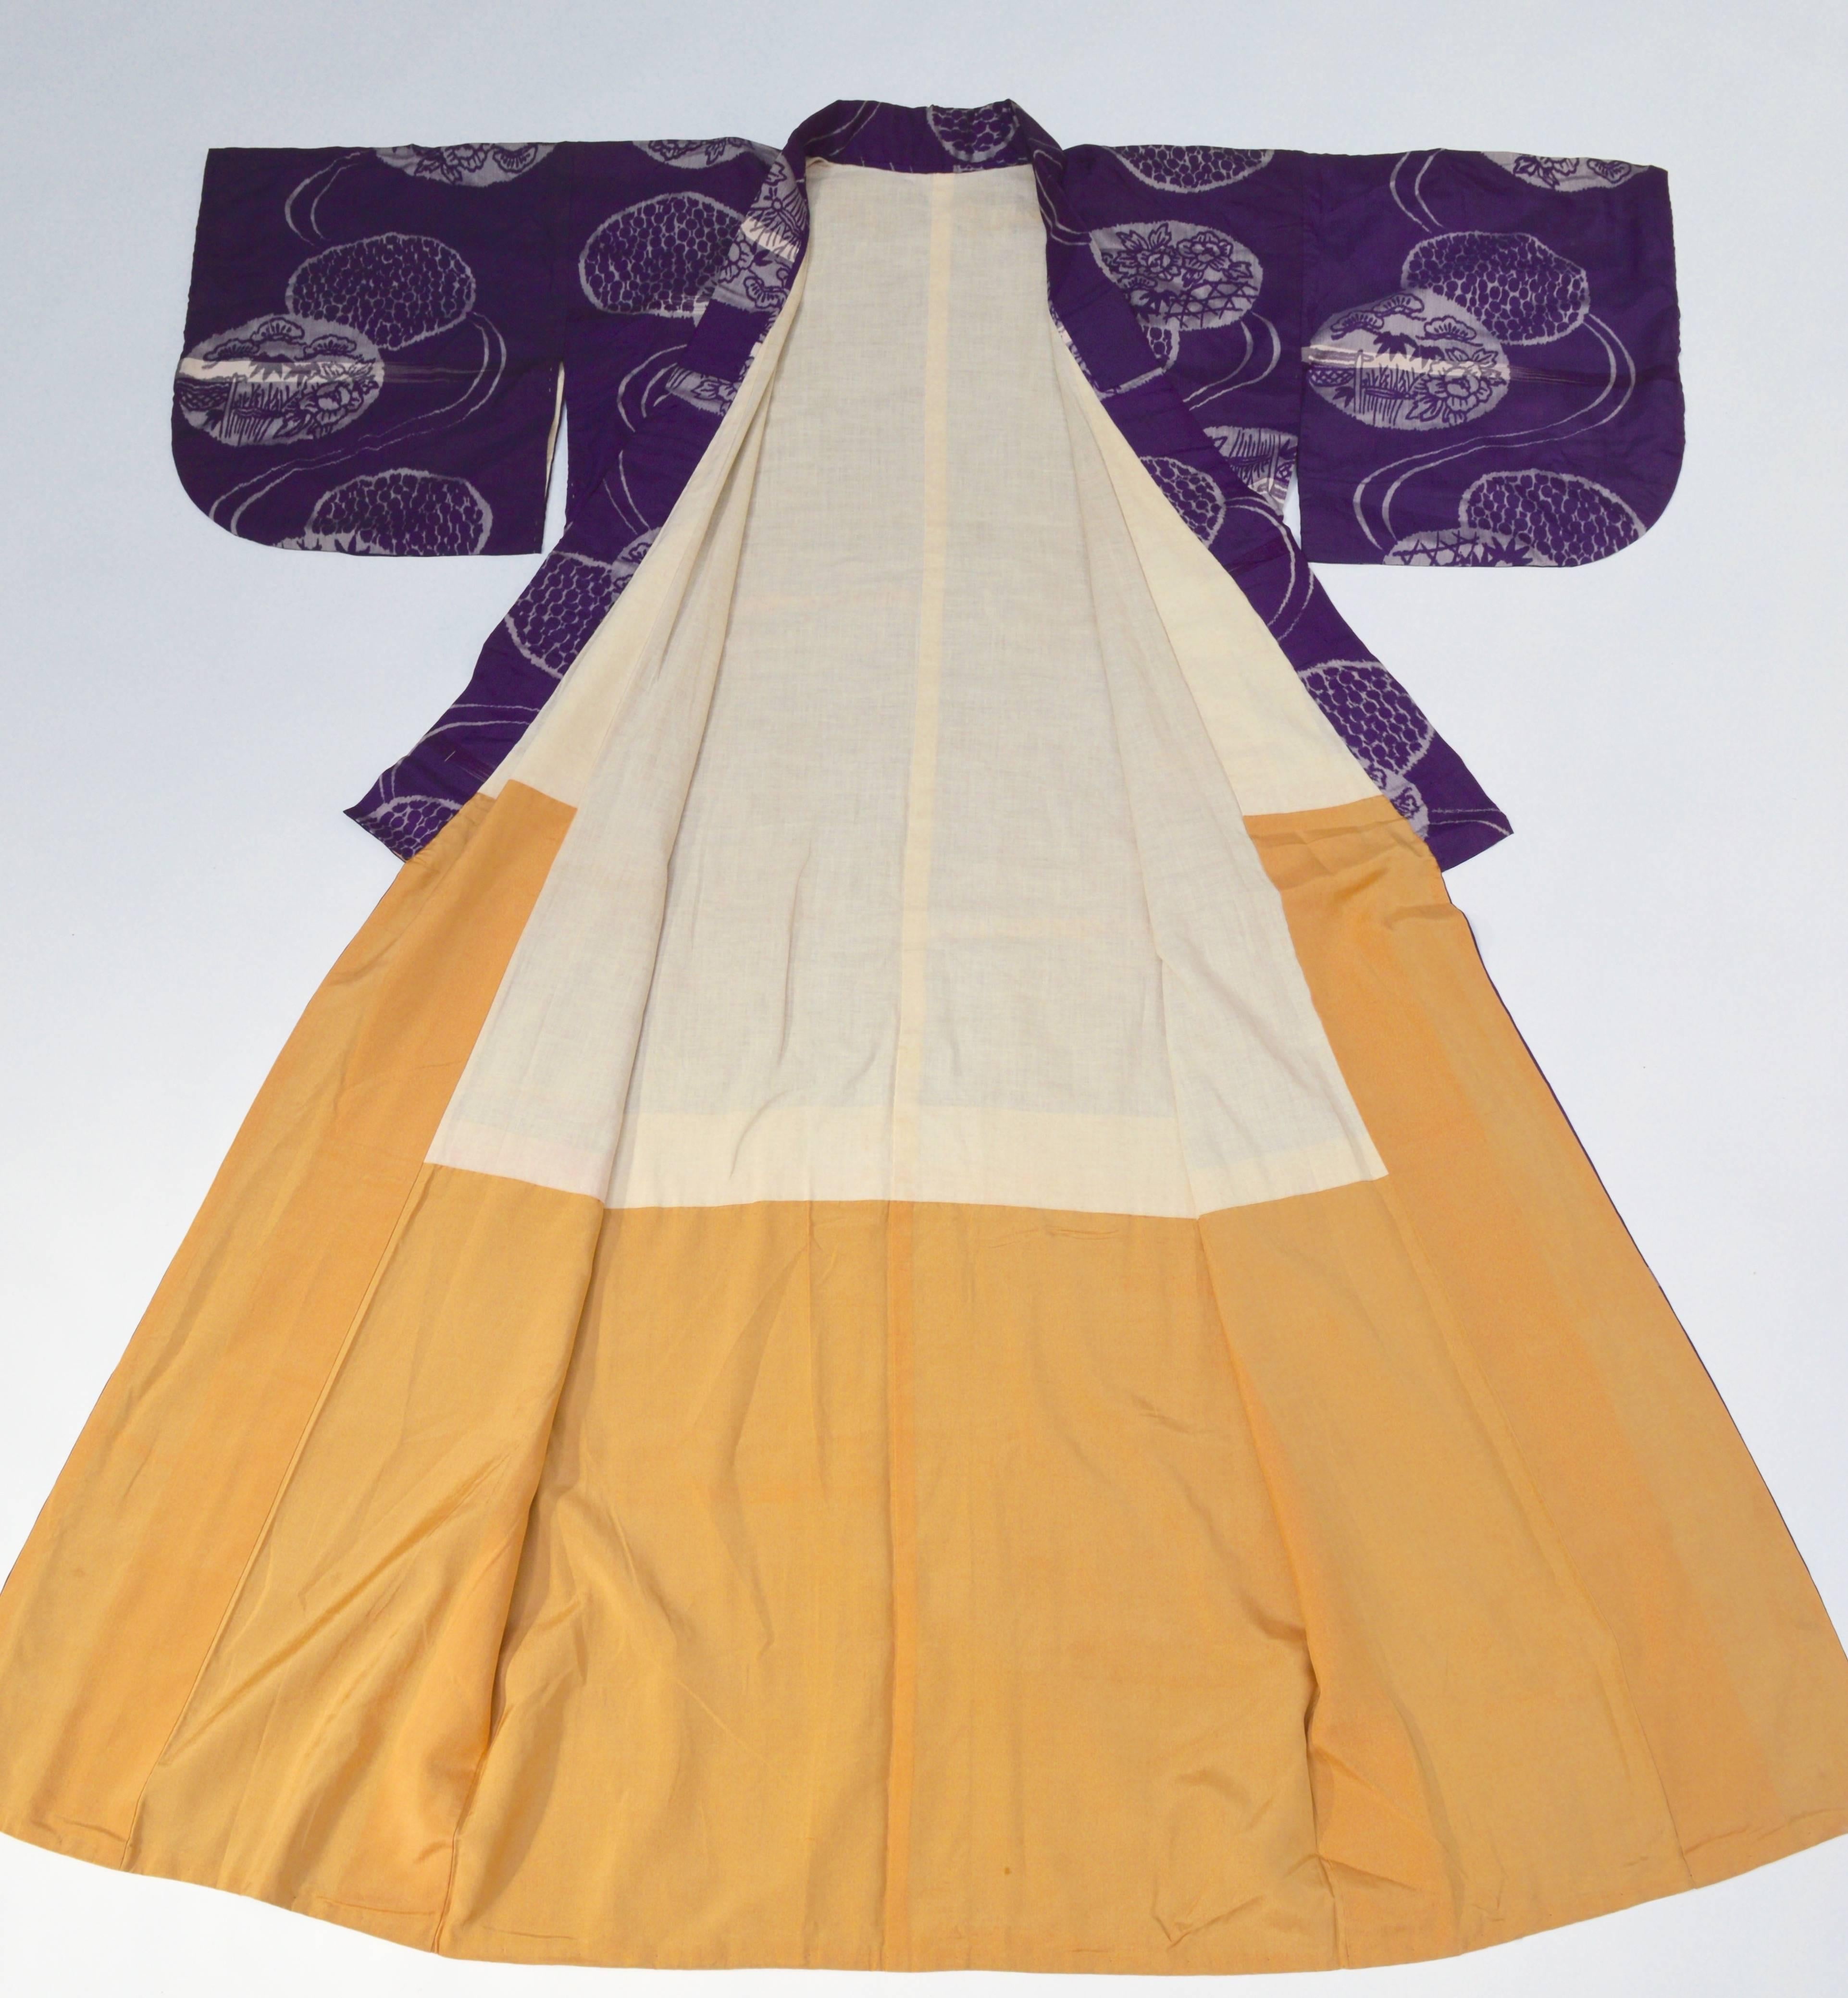 Meiji Japanese Meisen Woven Silk Kimono, circa 1900